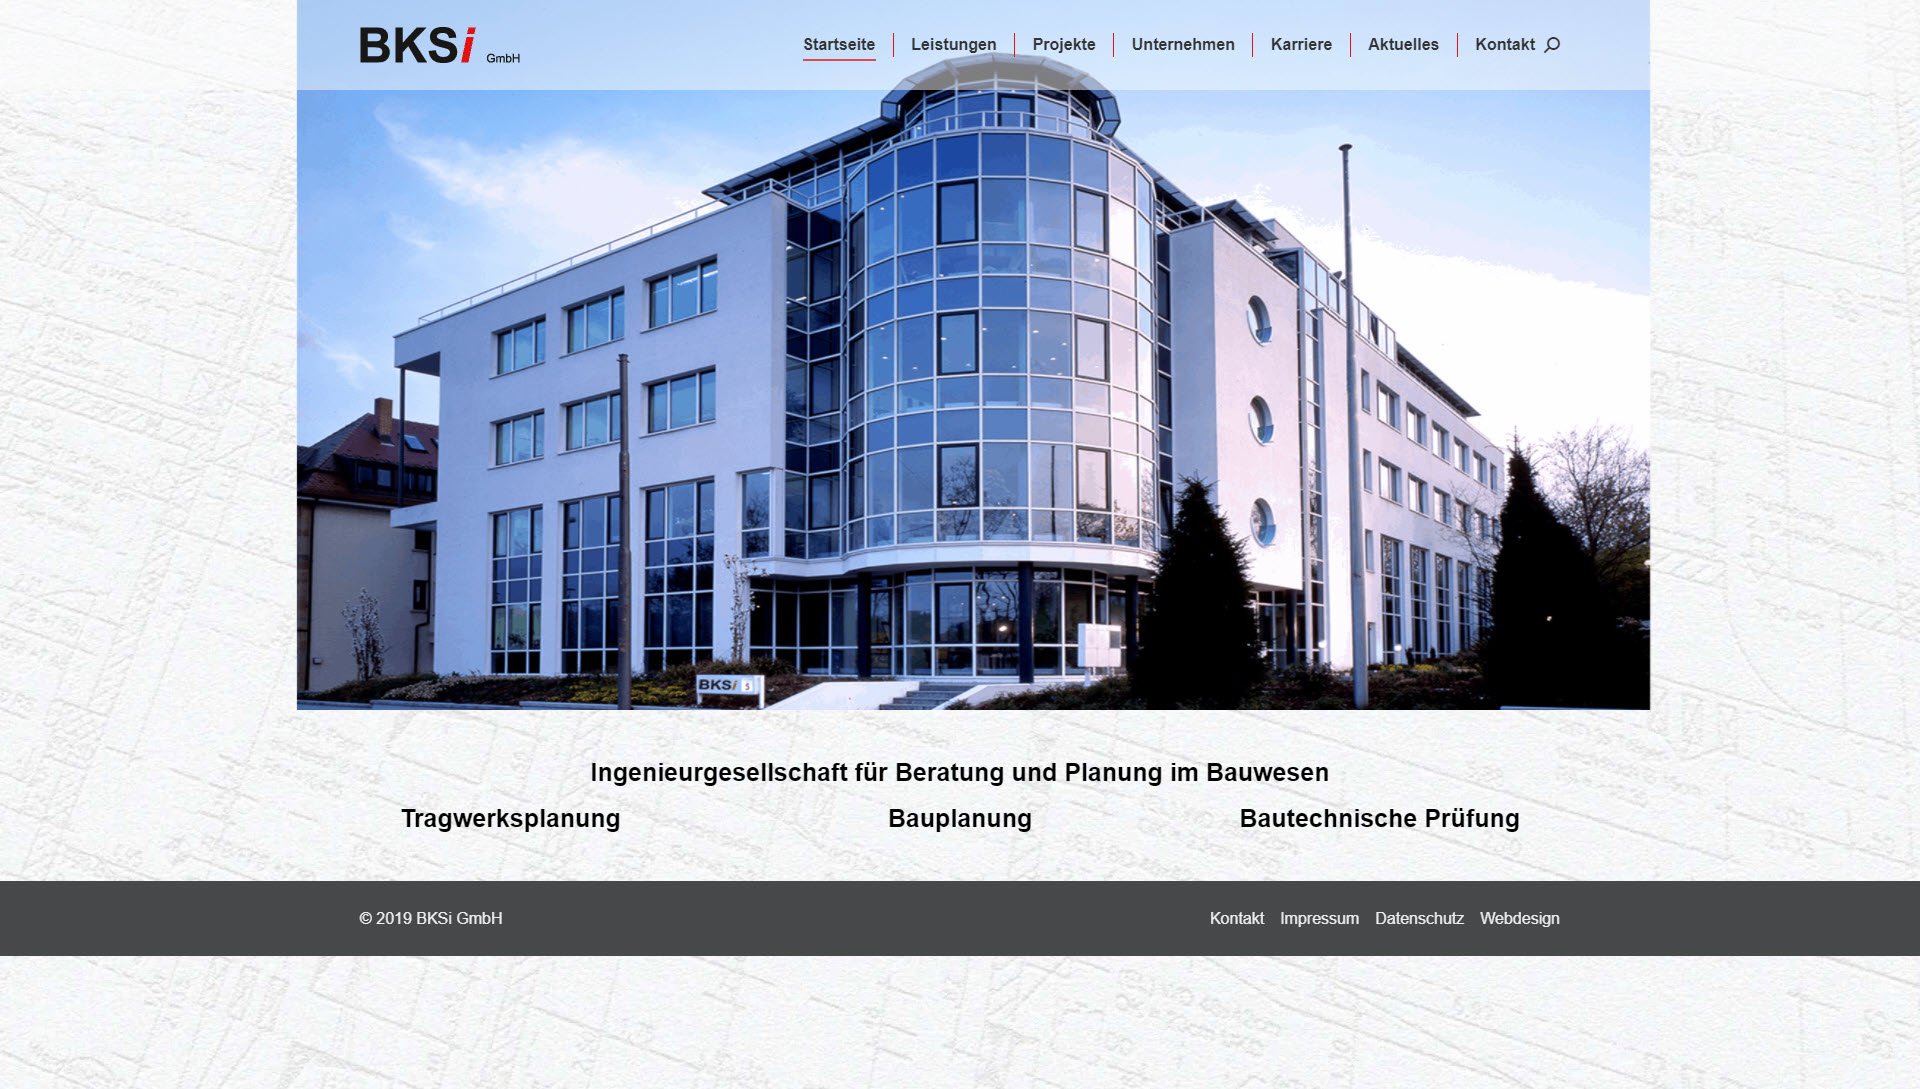 BKSI GmbH Ingenieurgesellschaft